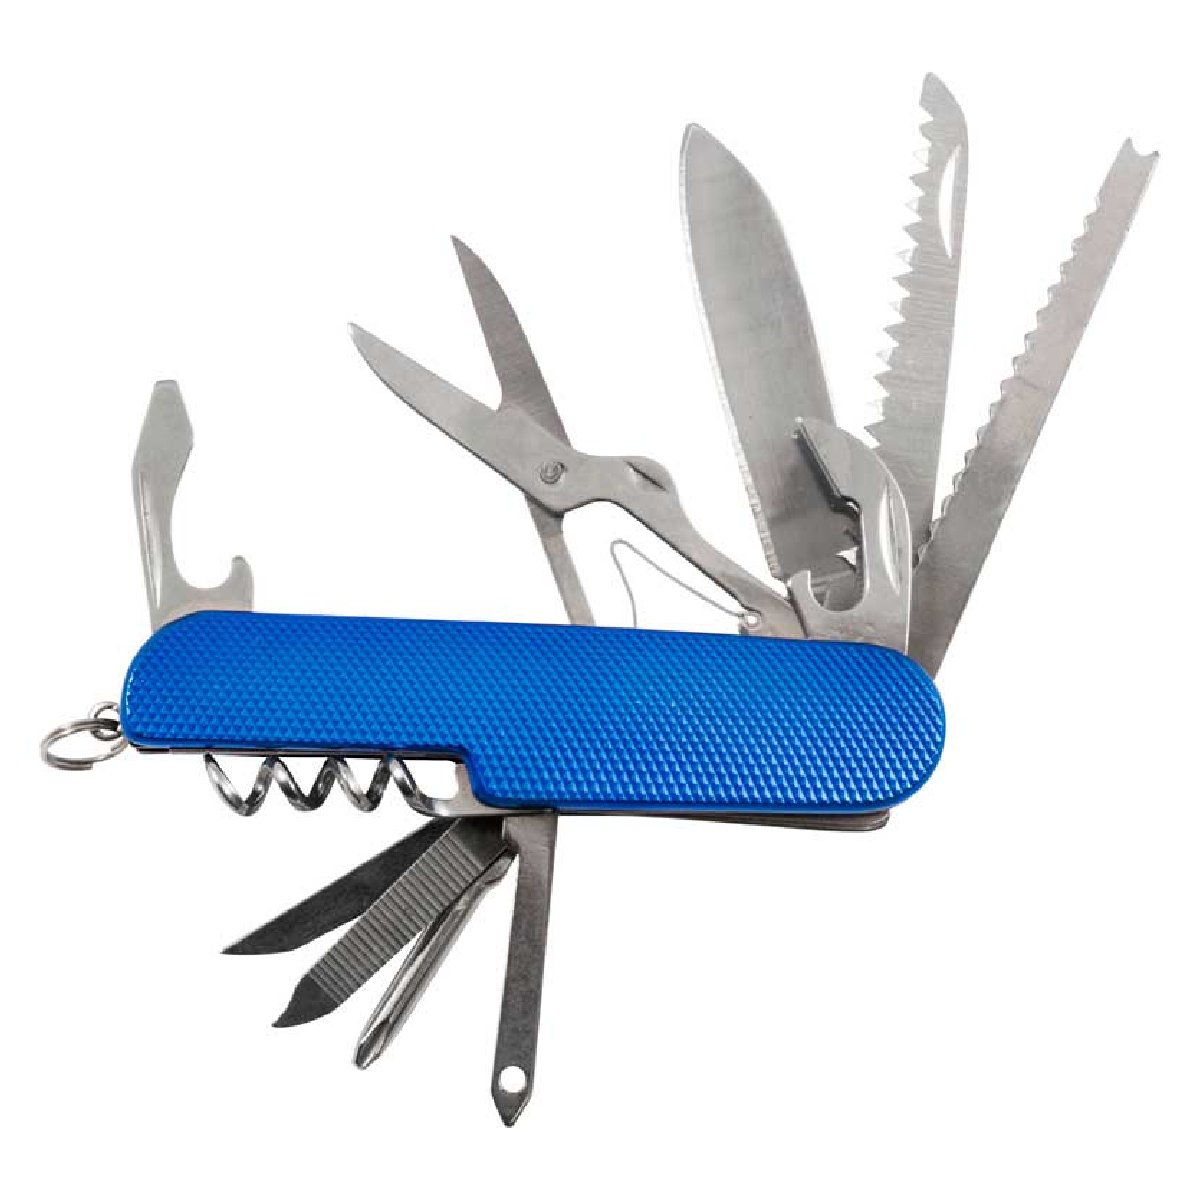 Нож складной многофункциональный Ecos SR082 11 в 1, нержавеющая сталь, блистер, синий, (325130)Купить